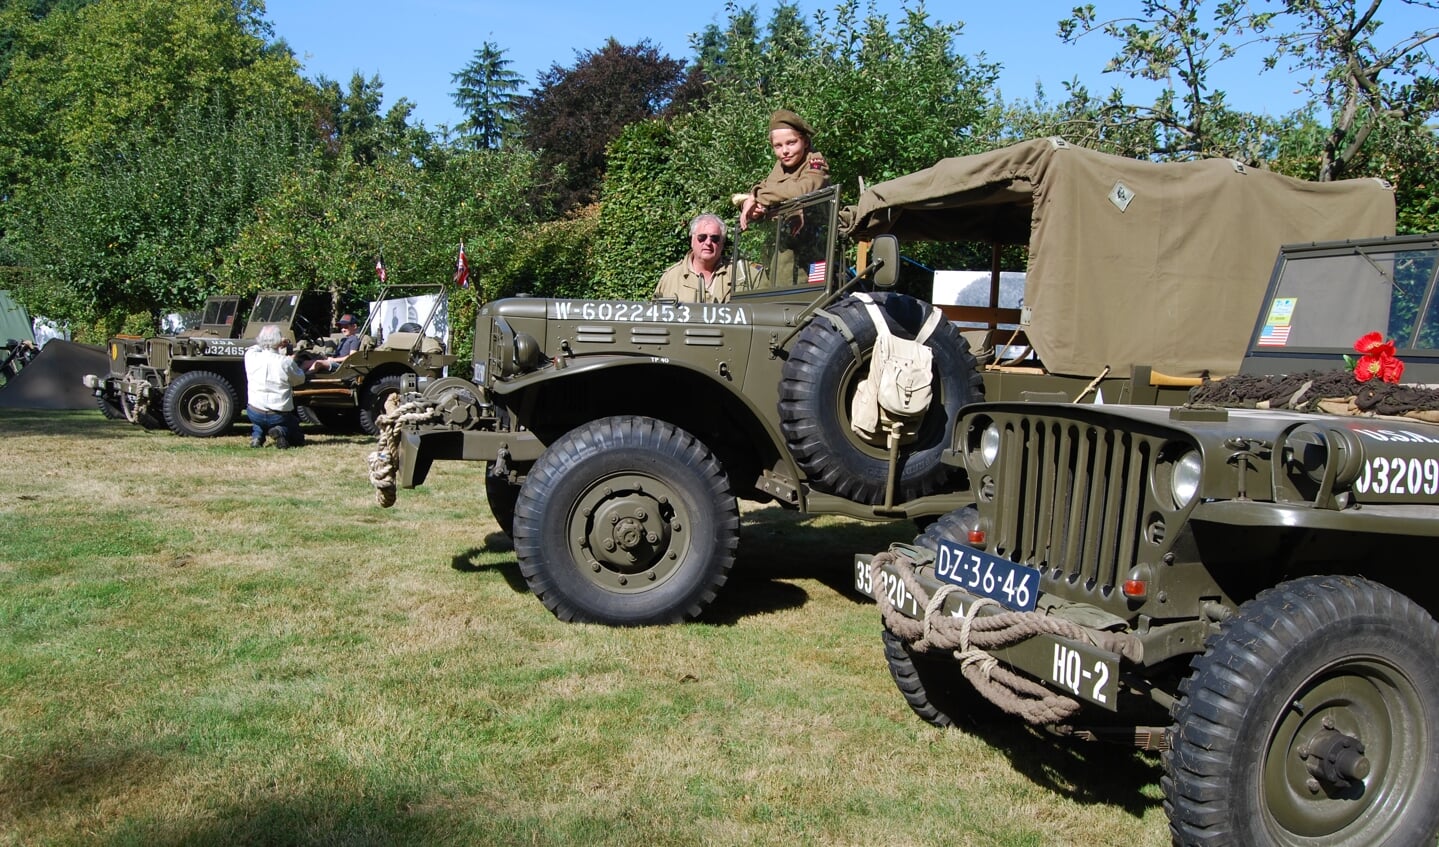 Militaire voertuigen zijn dit weekend te zien op een bivak in de kasteeltuin. (Foto: Corinna Romanesco)